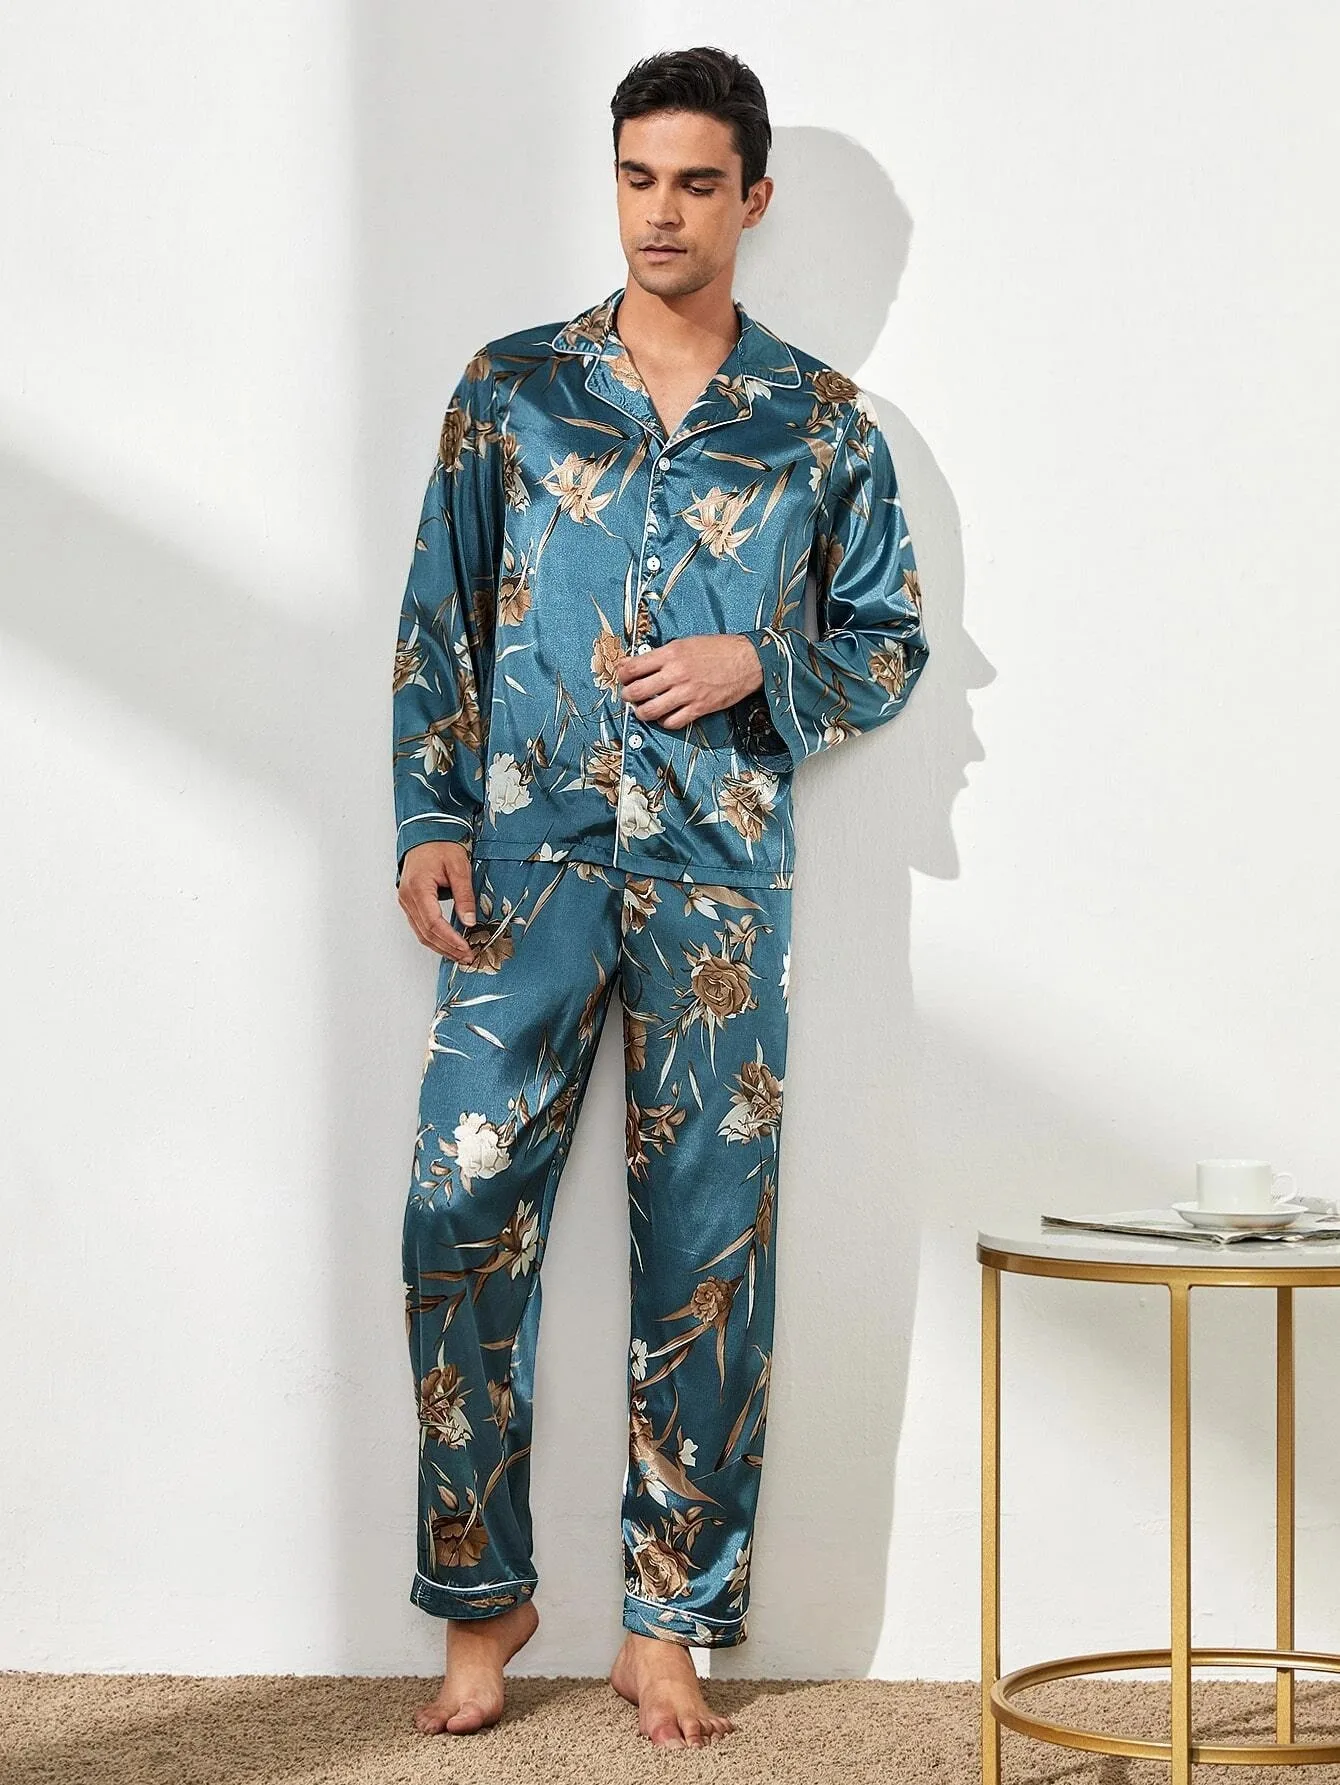 Men's Pajama Silk Pajamas for Man Sleep Tops Male Nightwear Sleepwear Caual Male Pajamas 2 Pieces Long Set Home Suit for Men mens cotton pajama shorts